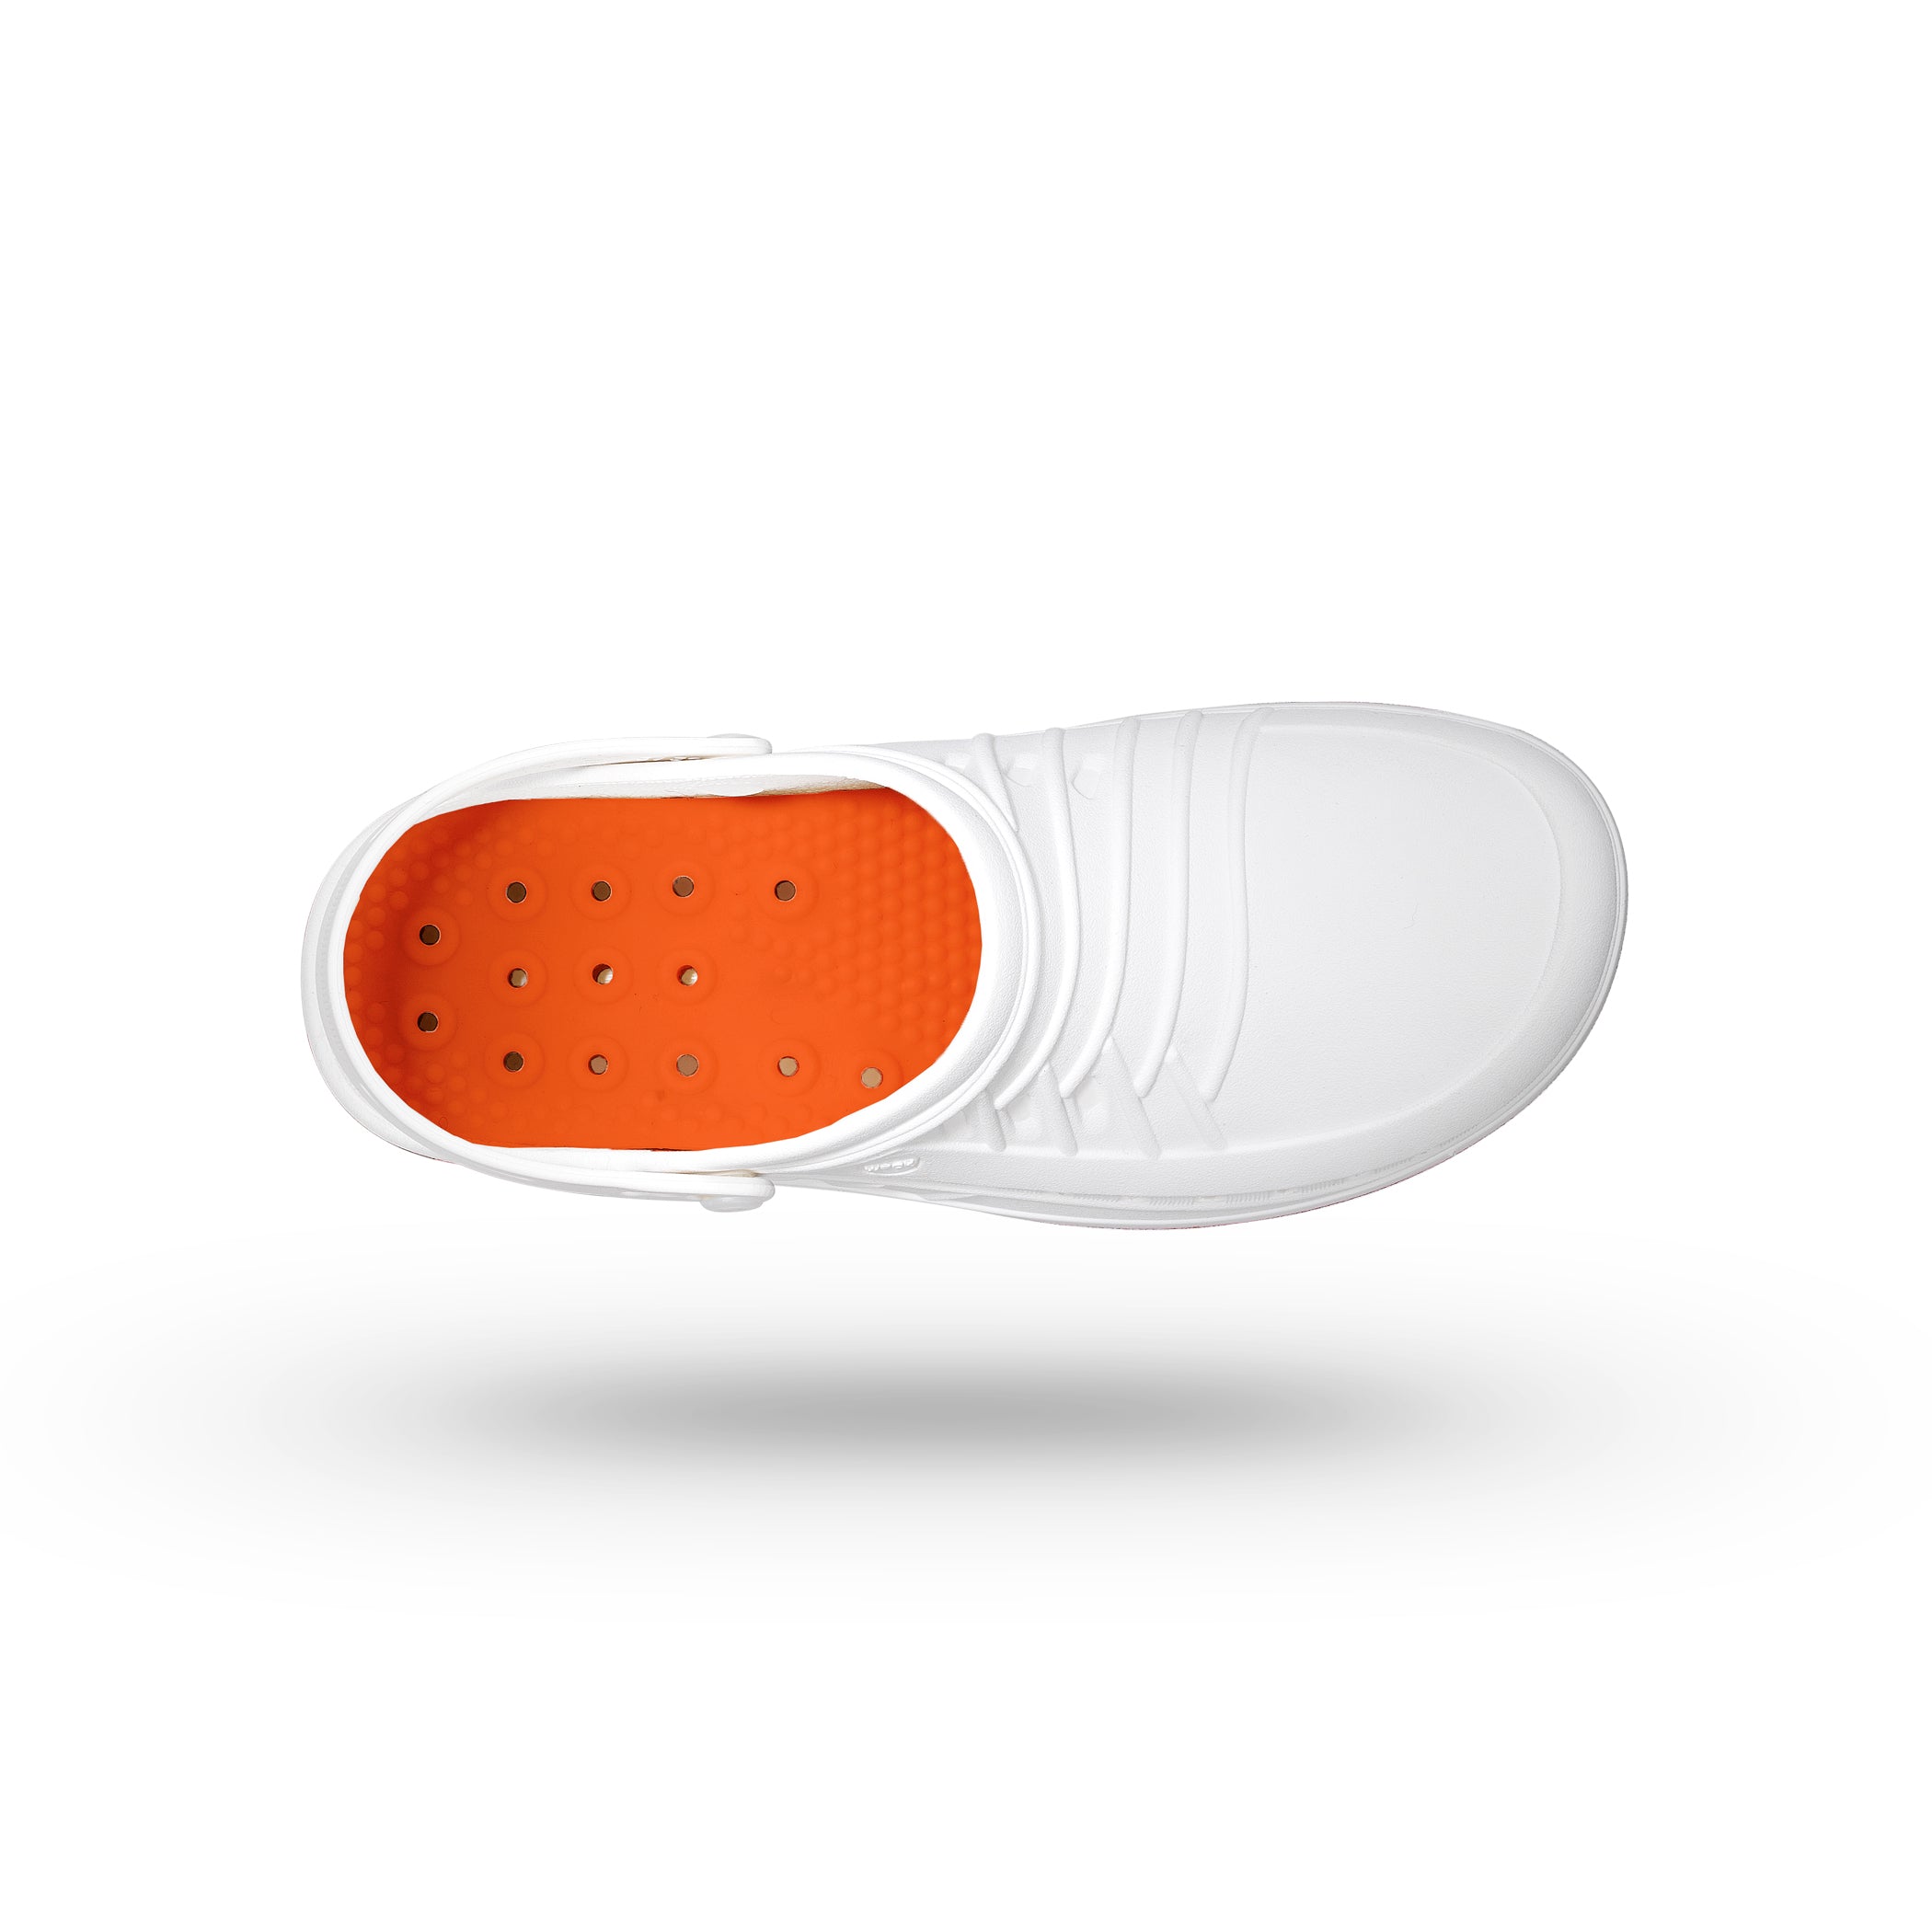 CLOG zoccoli autoclavabili#colore_01-bianco-arancio